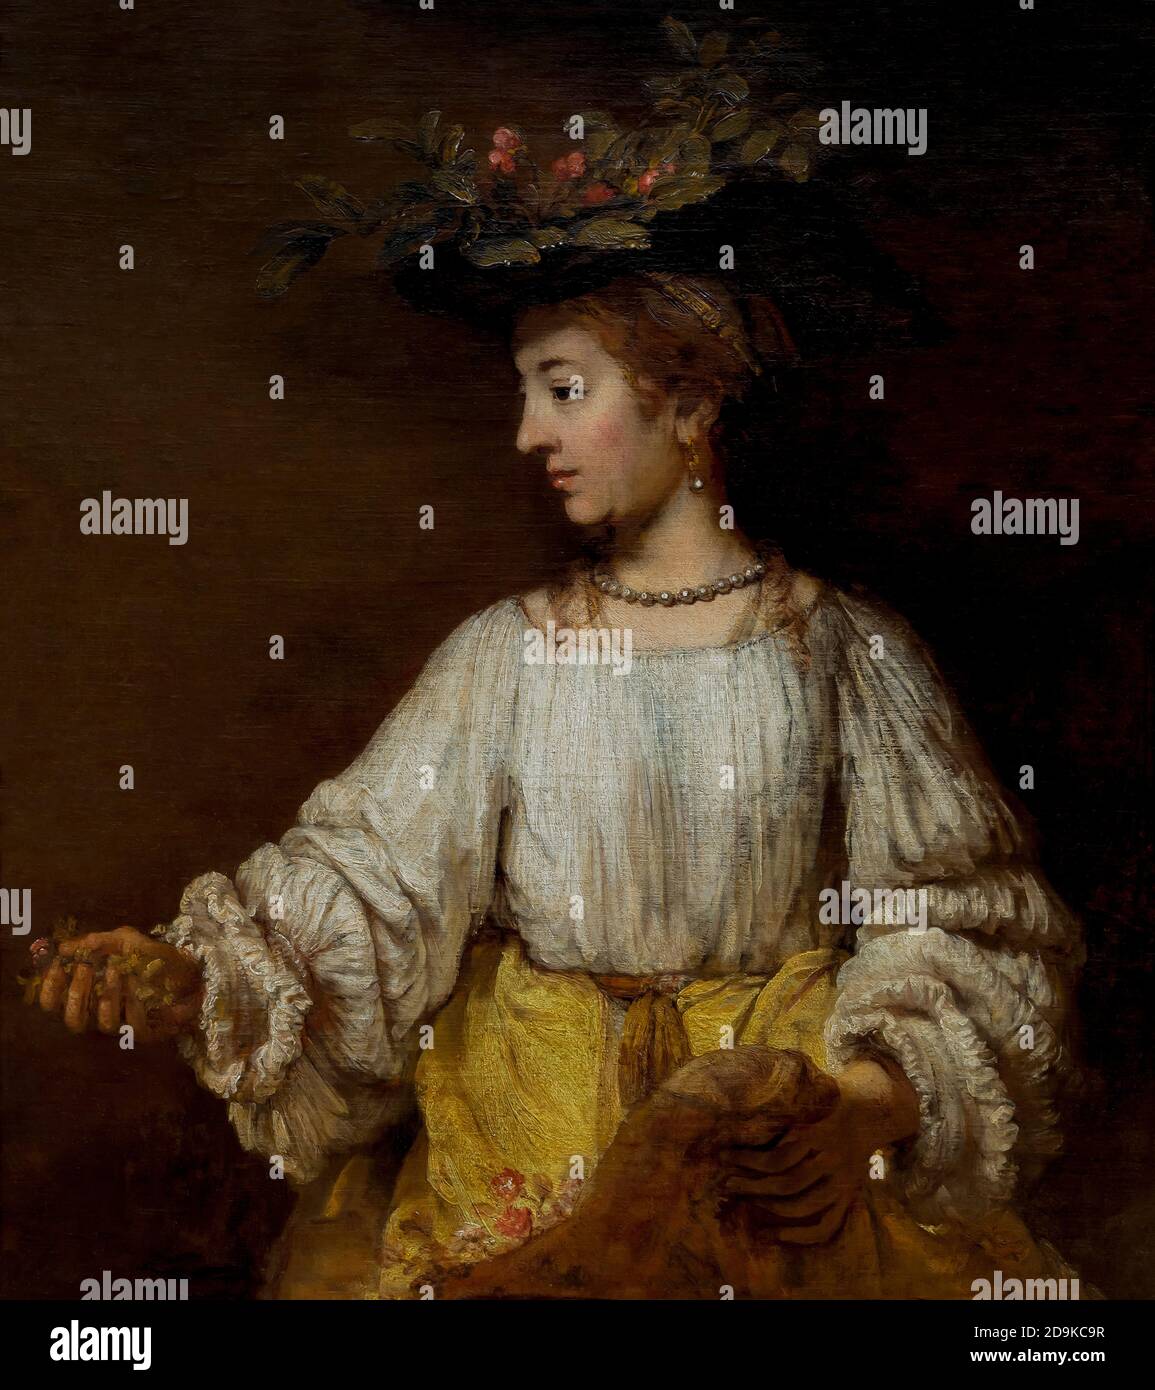 Flora, Rembrandt, vers 1654, Metropolitan Museum of Art, Manhattan, New York City, États-Unis, Amérique du Nord Banque D'Images